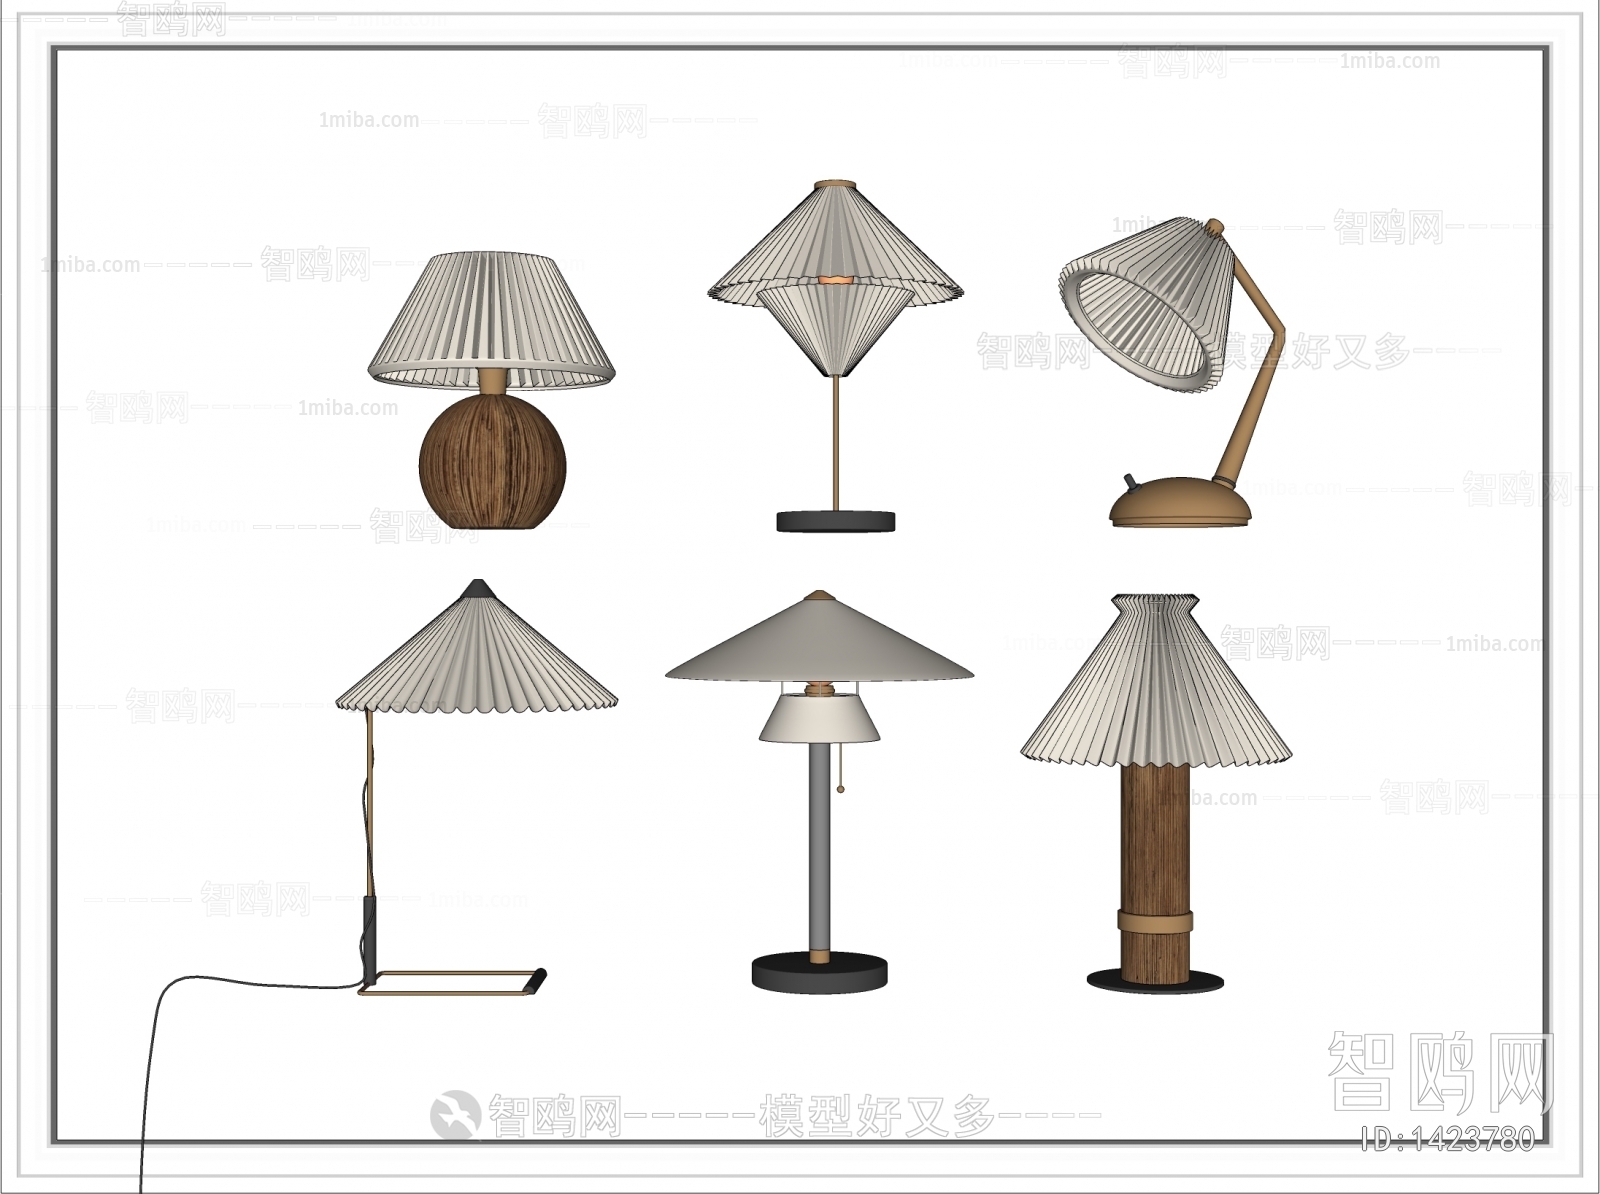 American Style Wabi-sabi Style Table Lamp